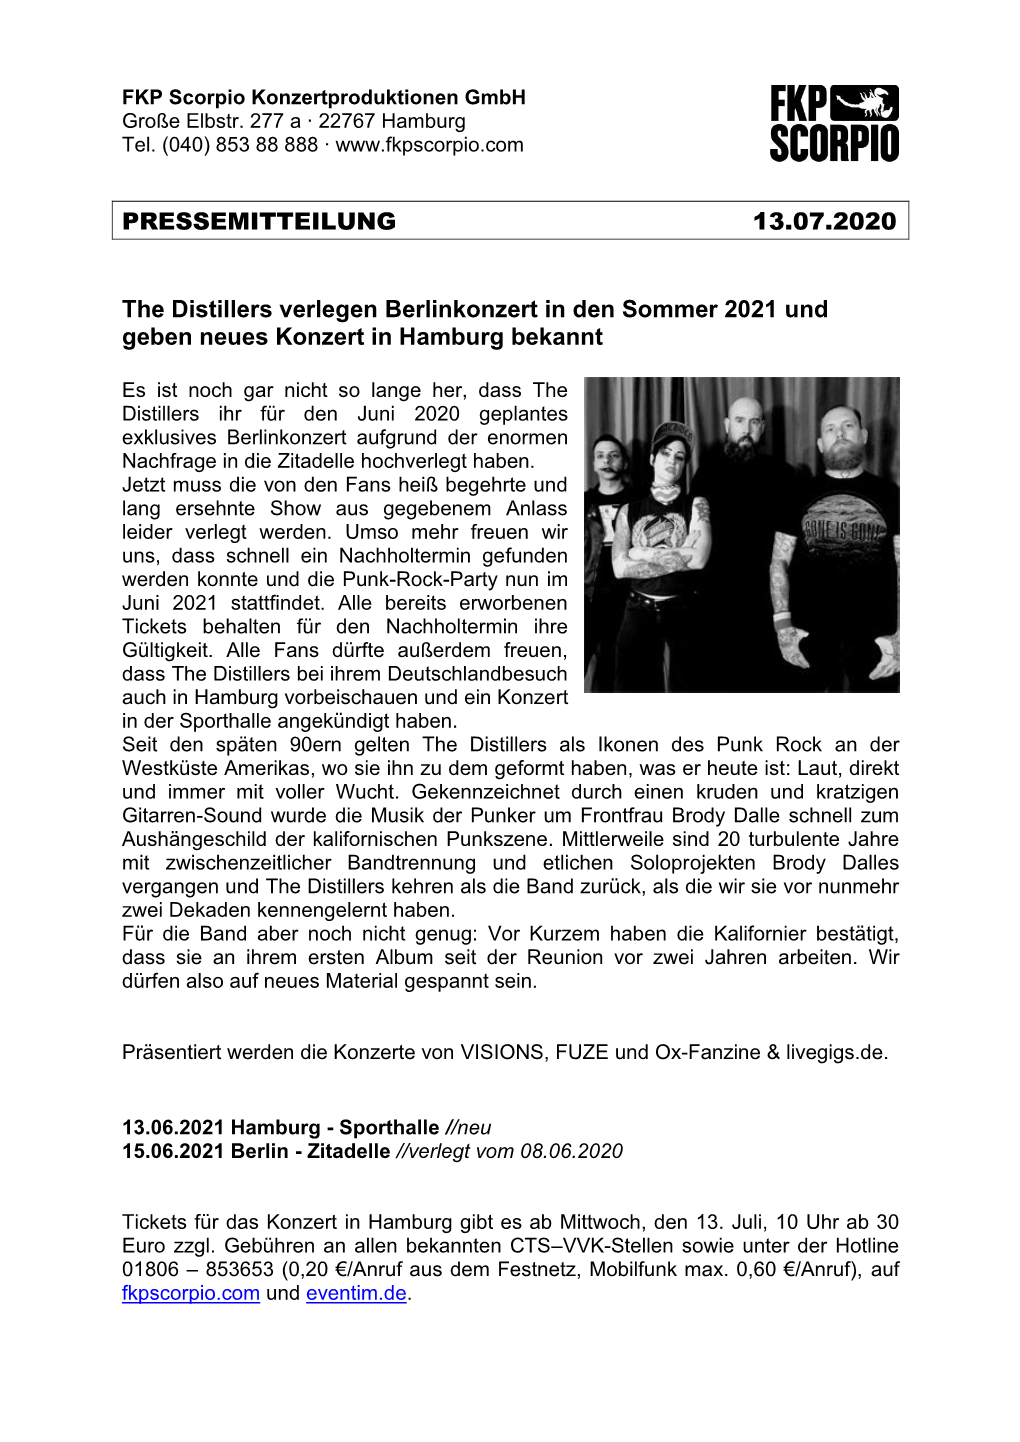 PRESSEMITTEILUNG 13.07.2020 the Distillers Verlegen